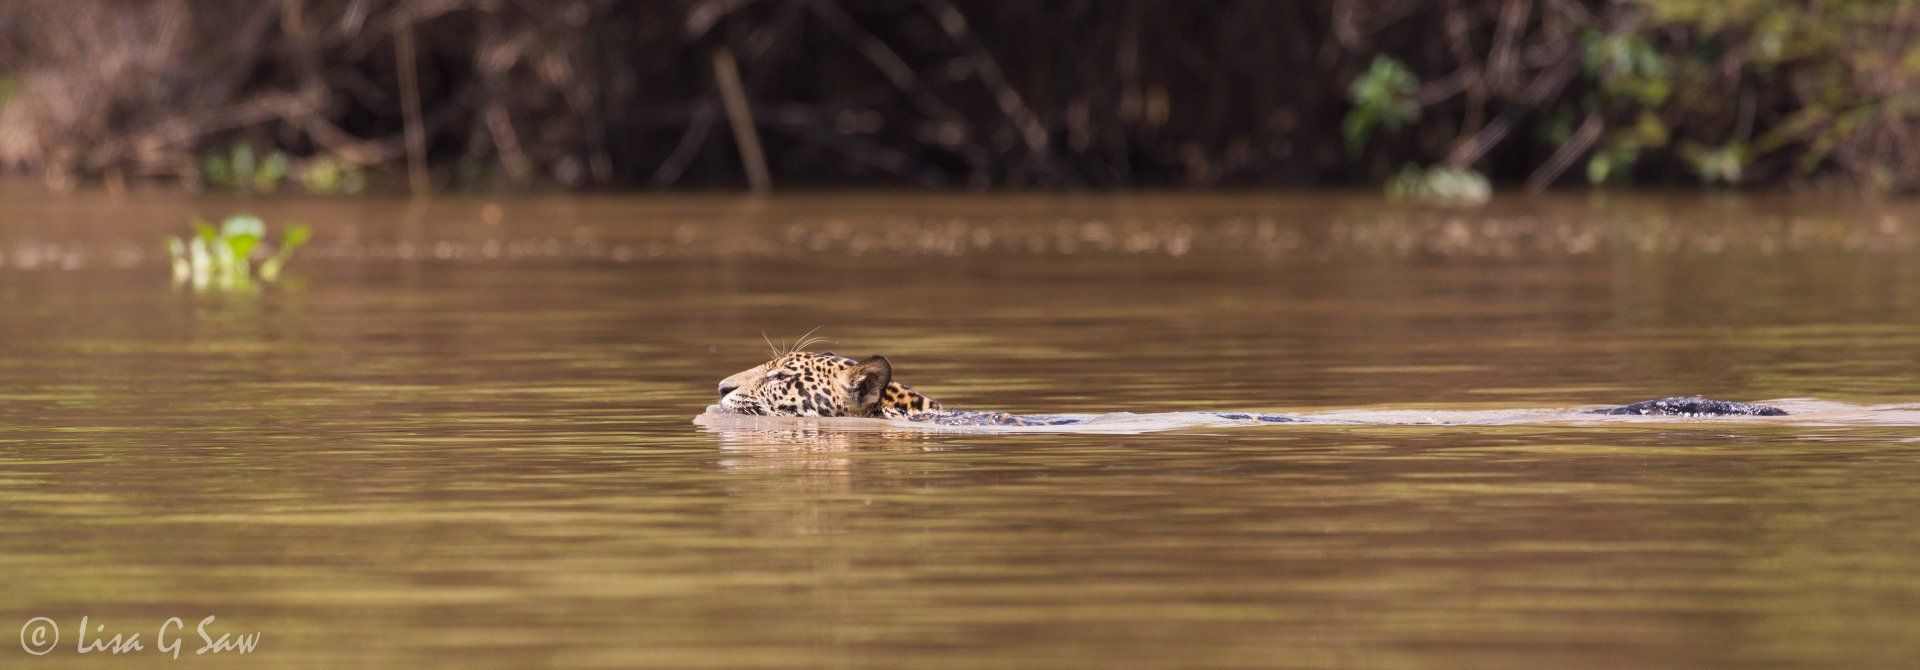 Jaguar swimming in brown water